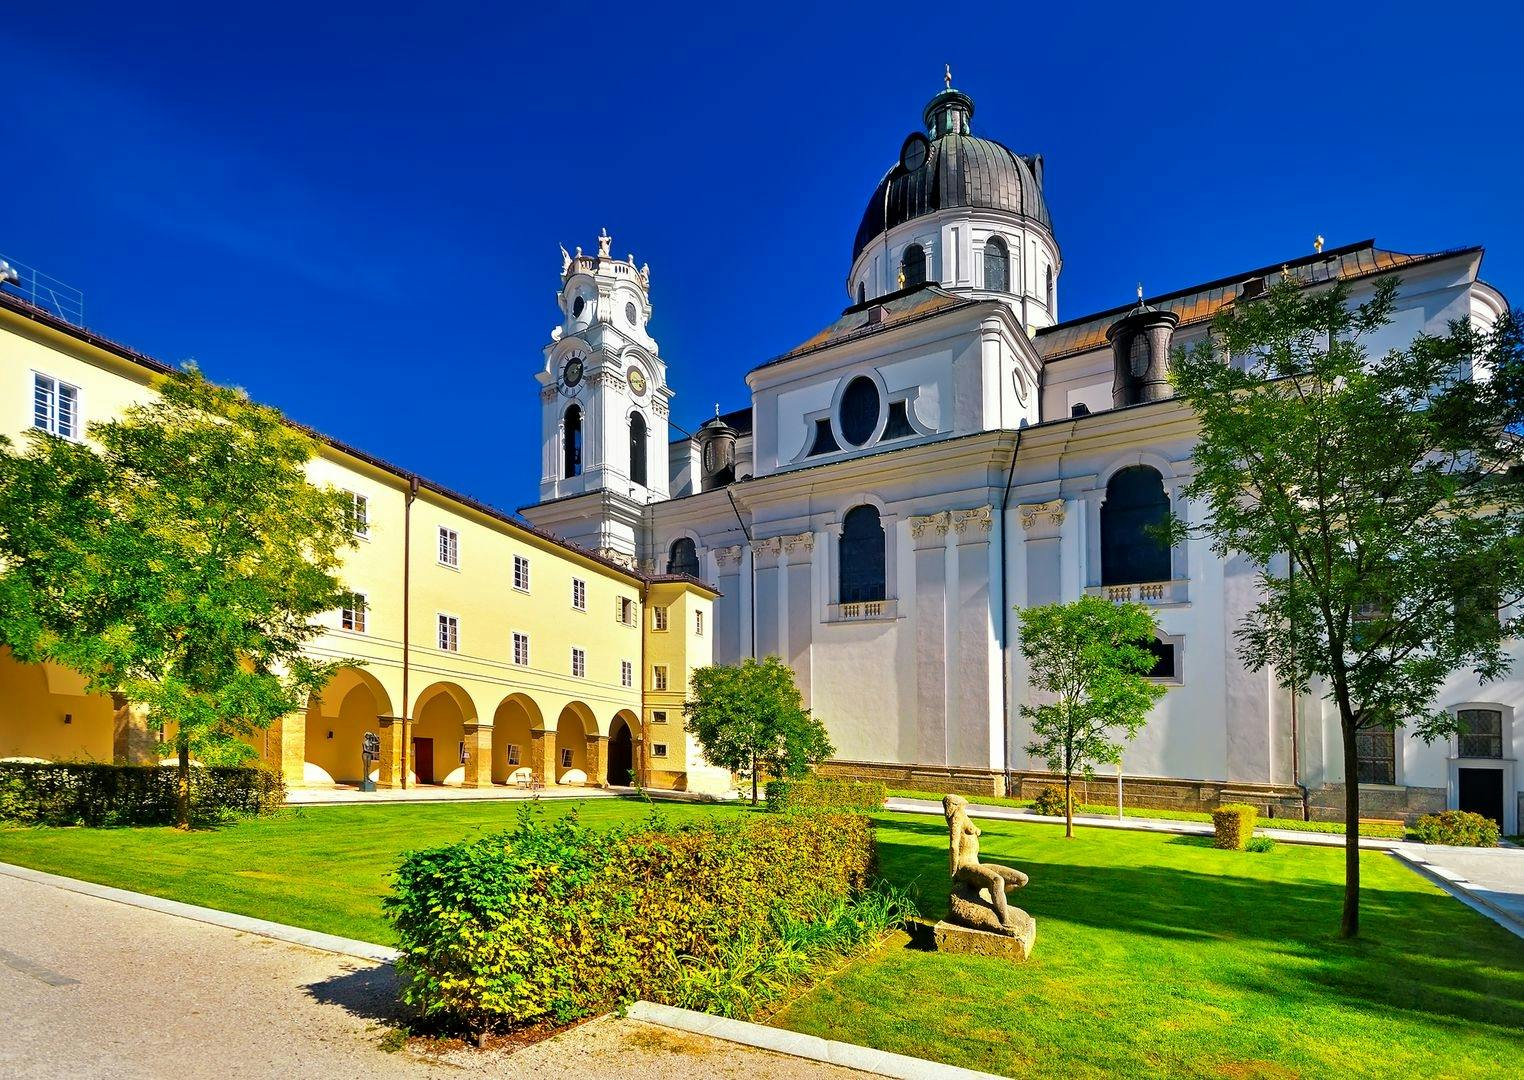 Paseo histórico de Salzburgo por el casco antiguo con audioguía en la aplicación